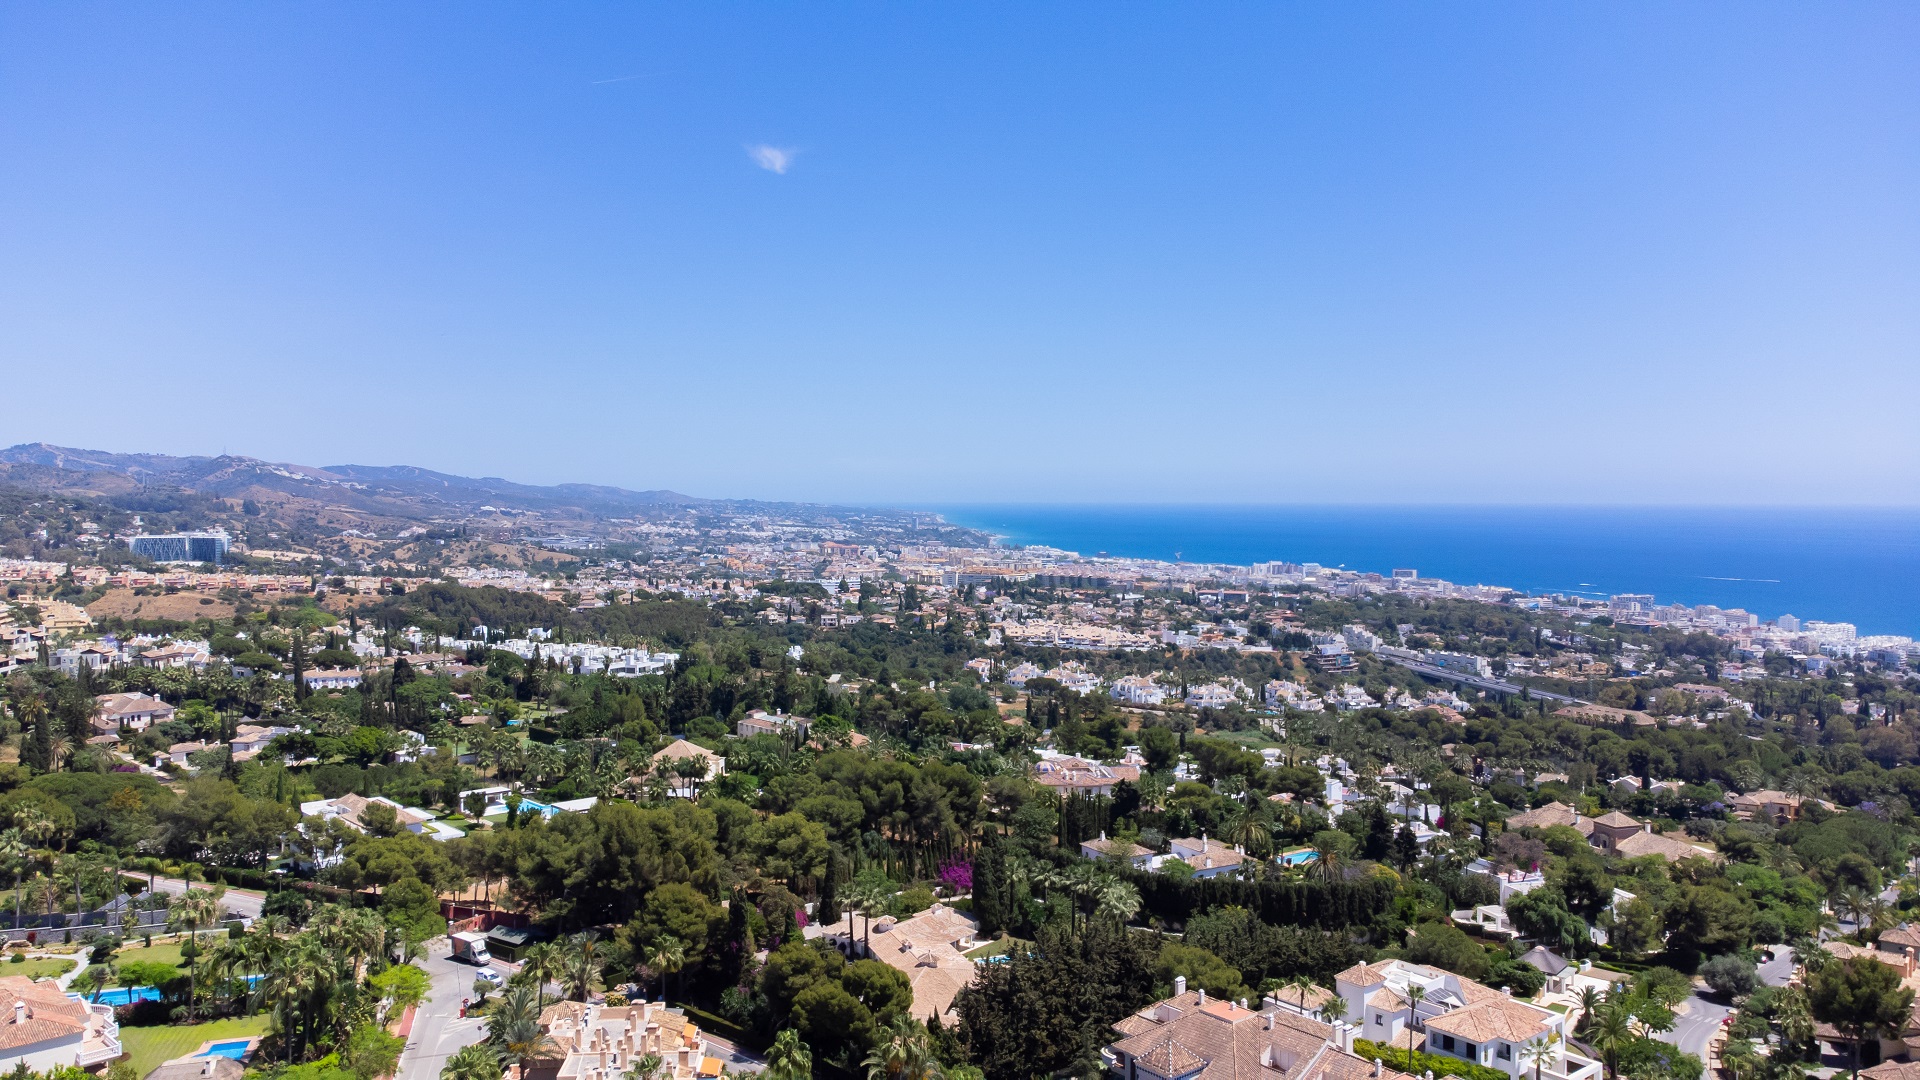 Erstaunliche Villa fertig in 1 Monat! in den spanischen Beverly Hills